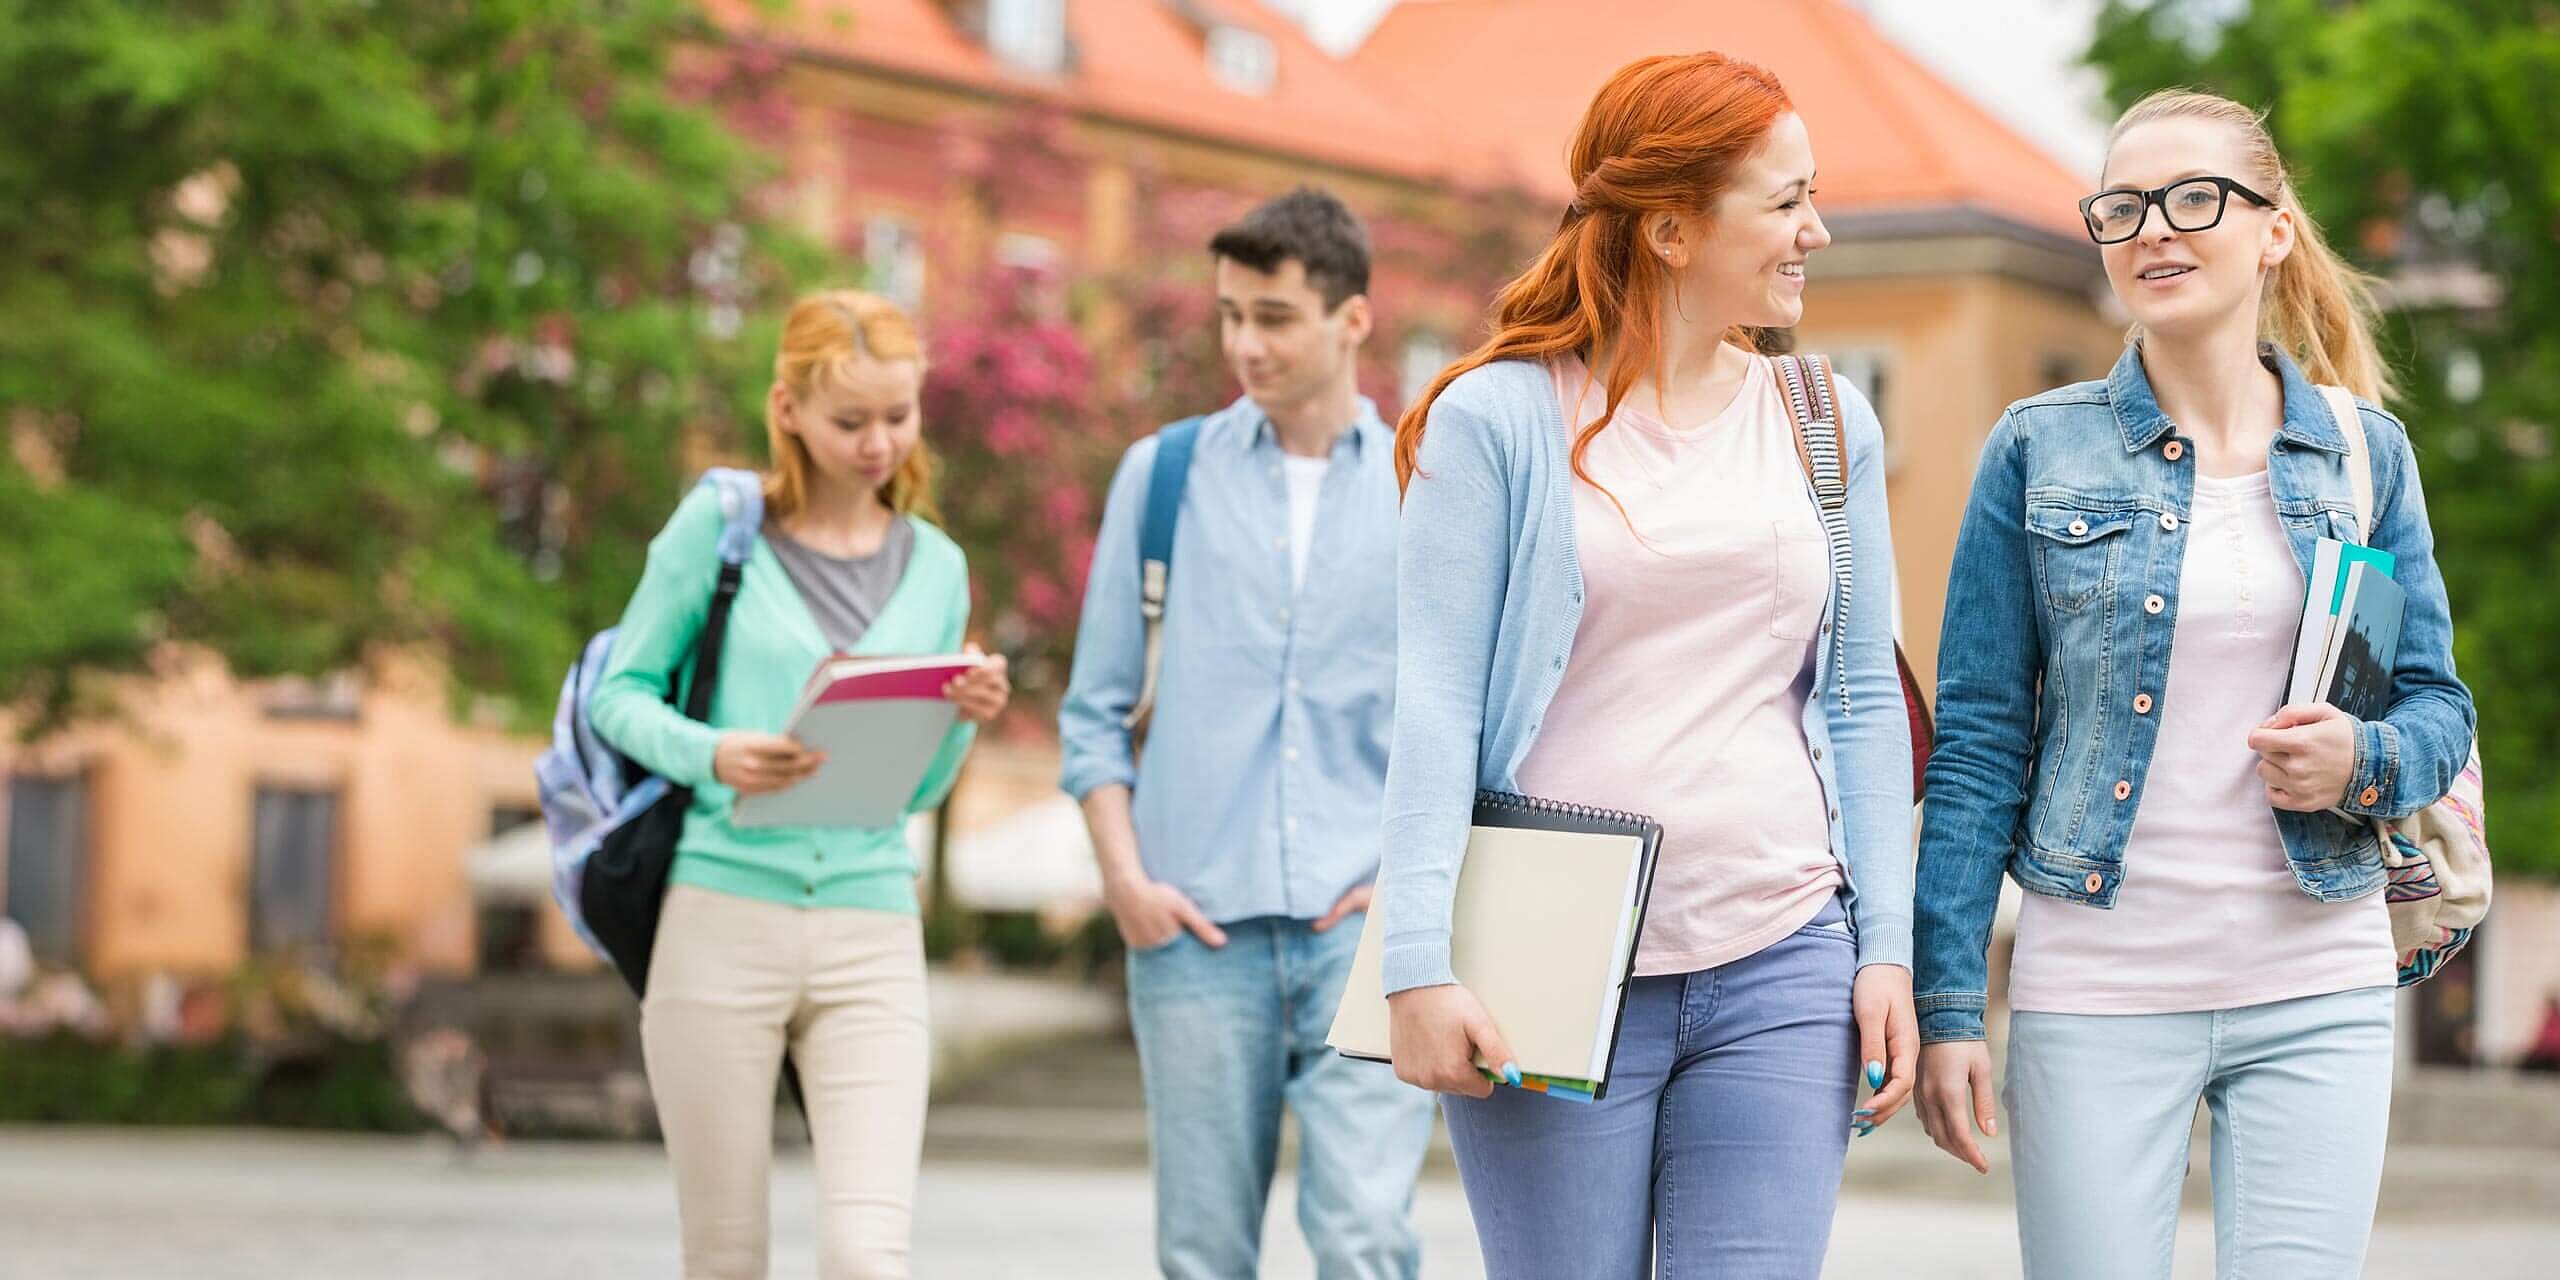 Eine Gruppe von vier Studenten geht an einem sonnigen Tag draußen spazieren. Zwei Studentinnen im Vordergrund lächeln, halten Notizbücher in der Hand und unterhalten sich miteinander. Im Hintergrund sind ein Student und eine Studentin mit ihren eigenen Aktivitäten beschäftigt.